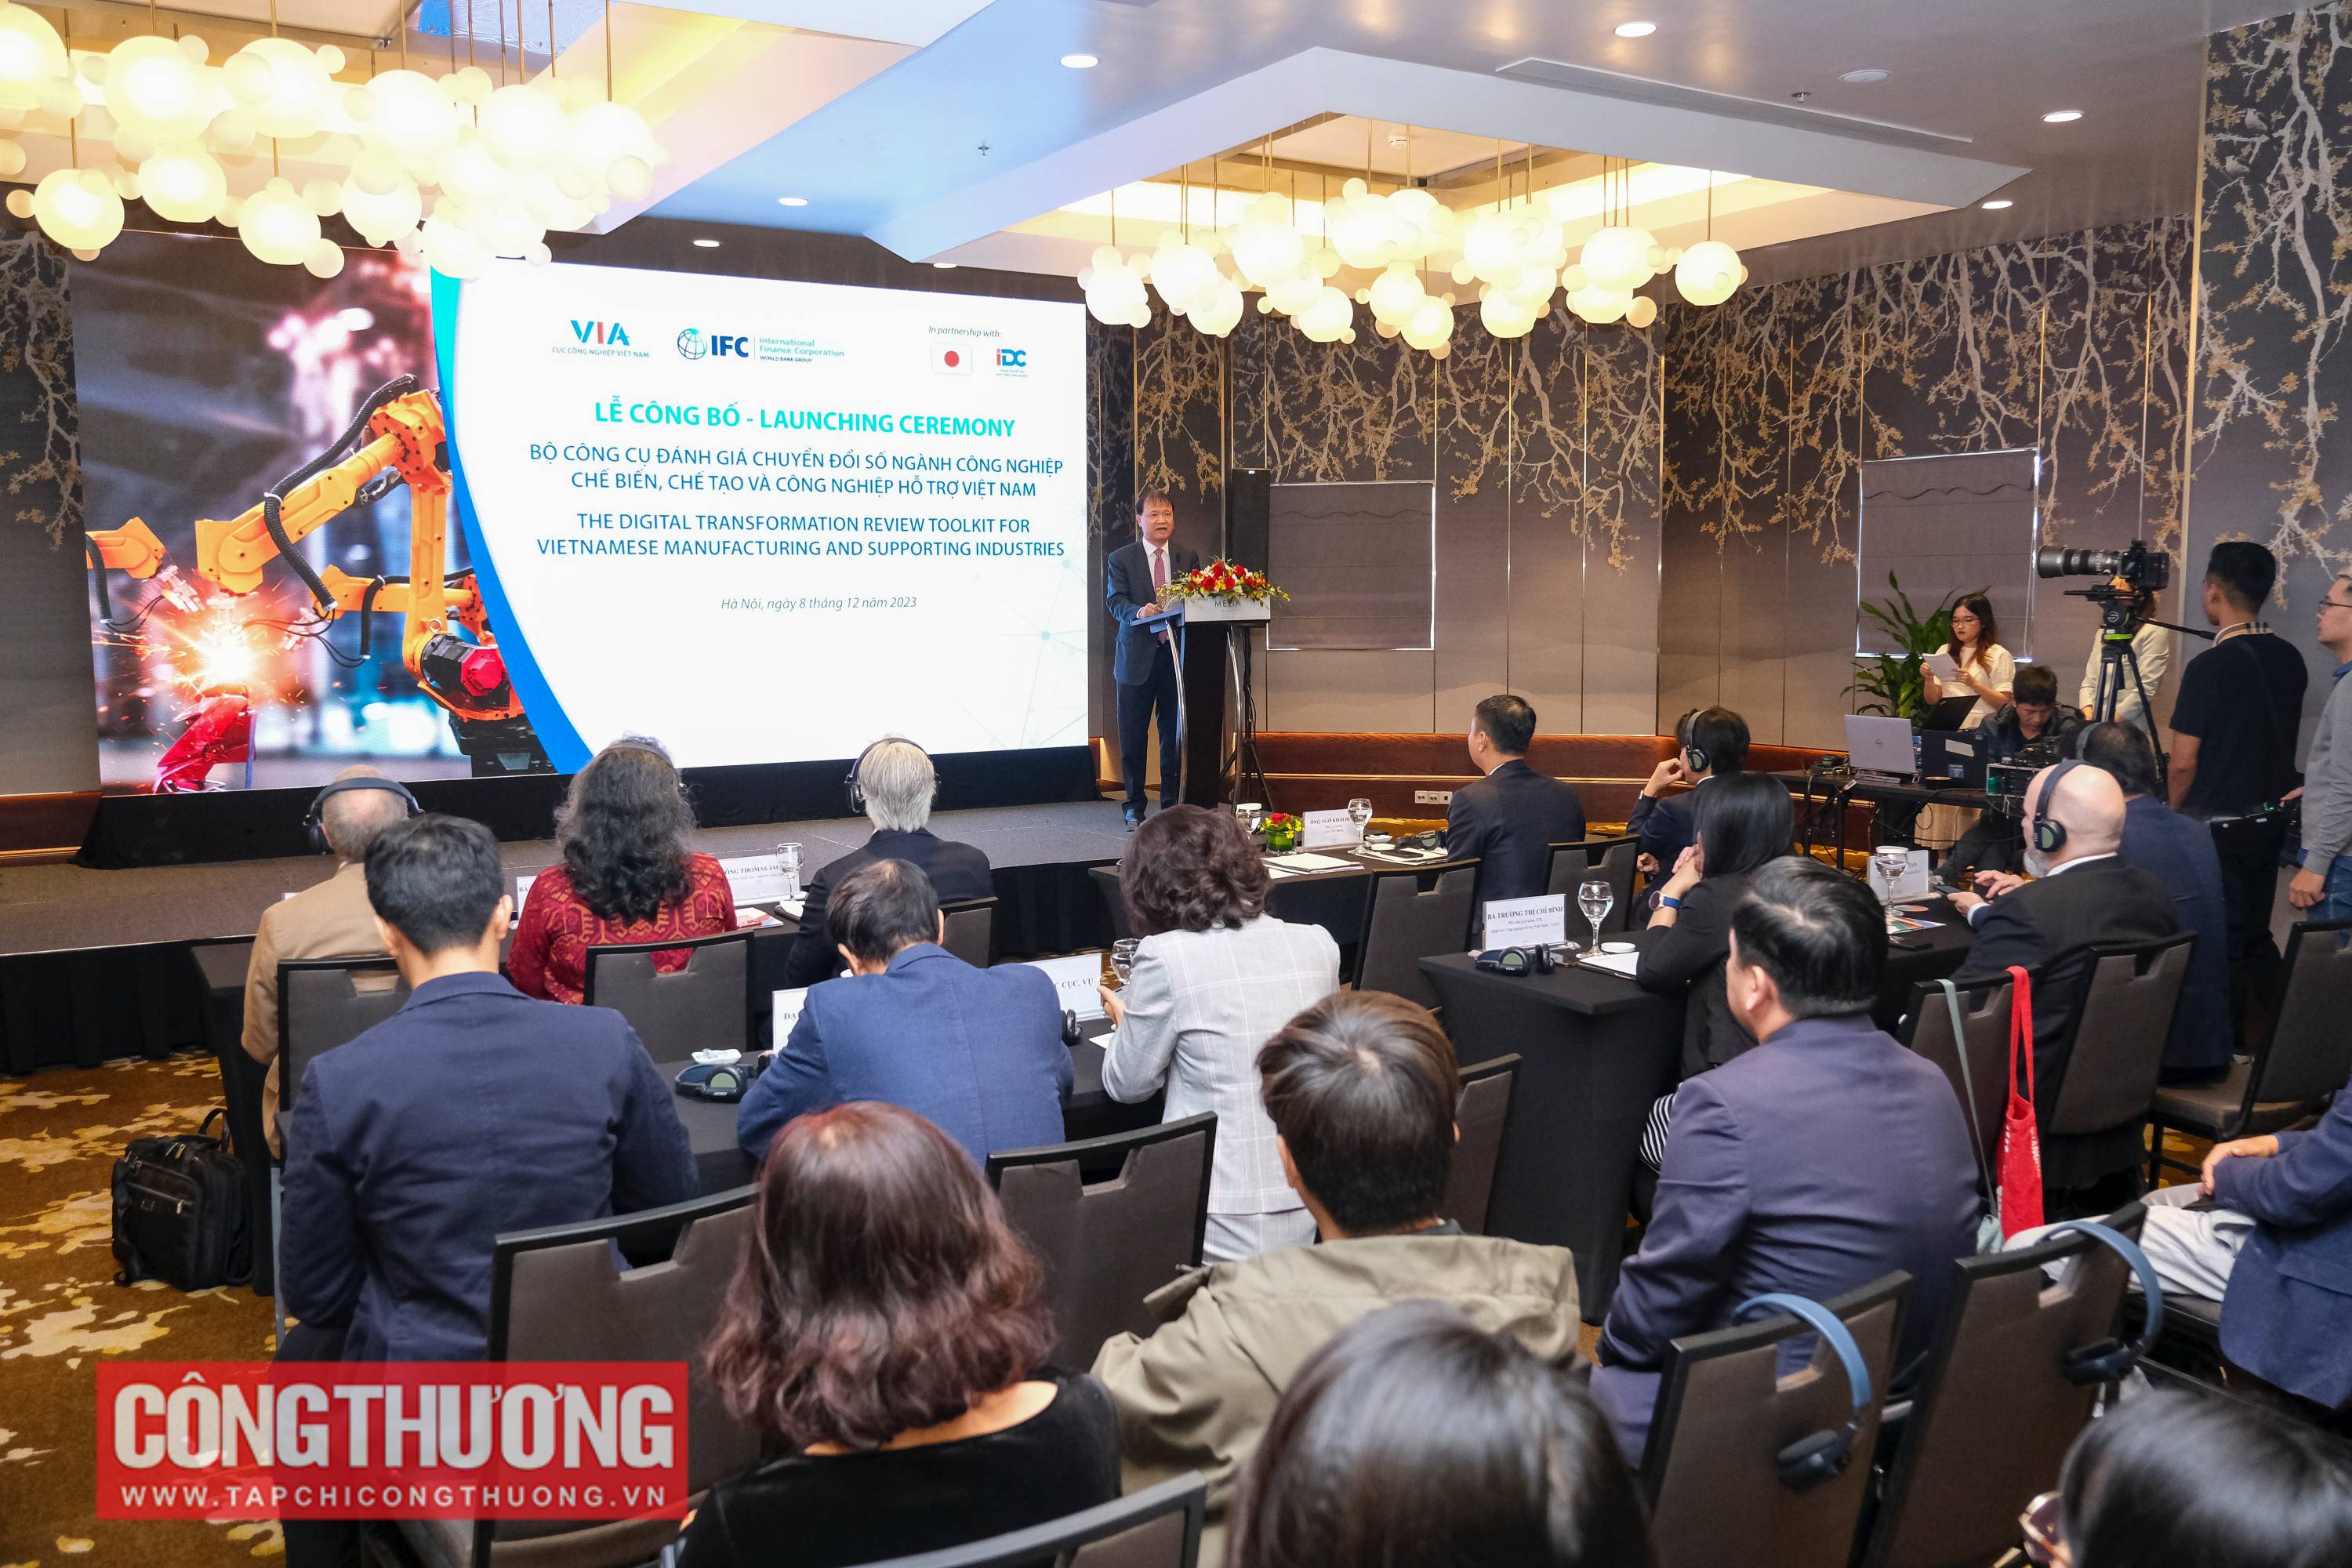 Toàn cảnh Lễ công bố Bộ công cụ đánh giá chuyển đổi số ngành công nghiệp chế biến chế tạo và công nghiệp hỗ trợ Việt Nam